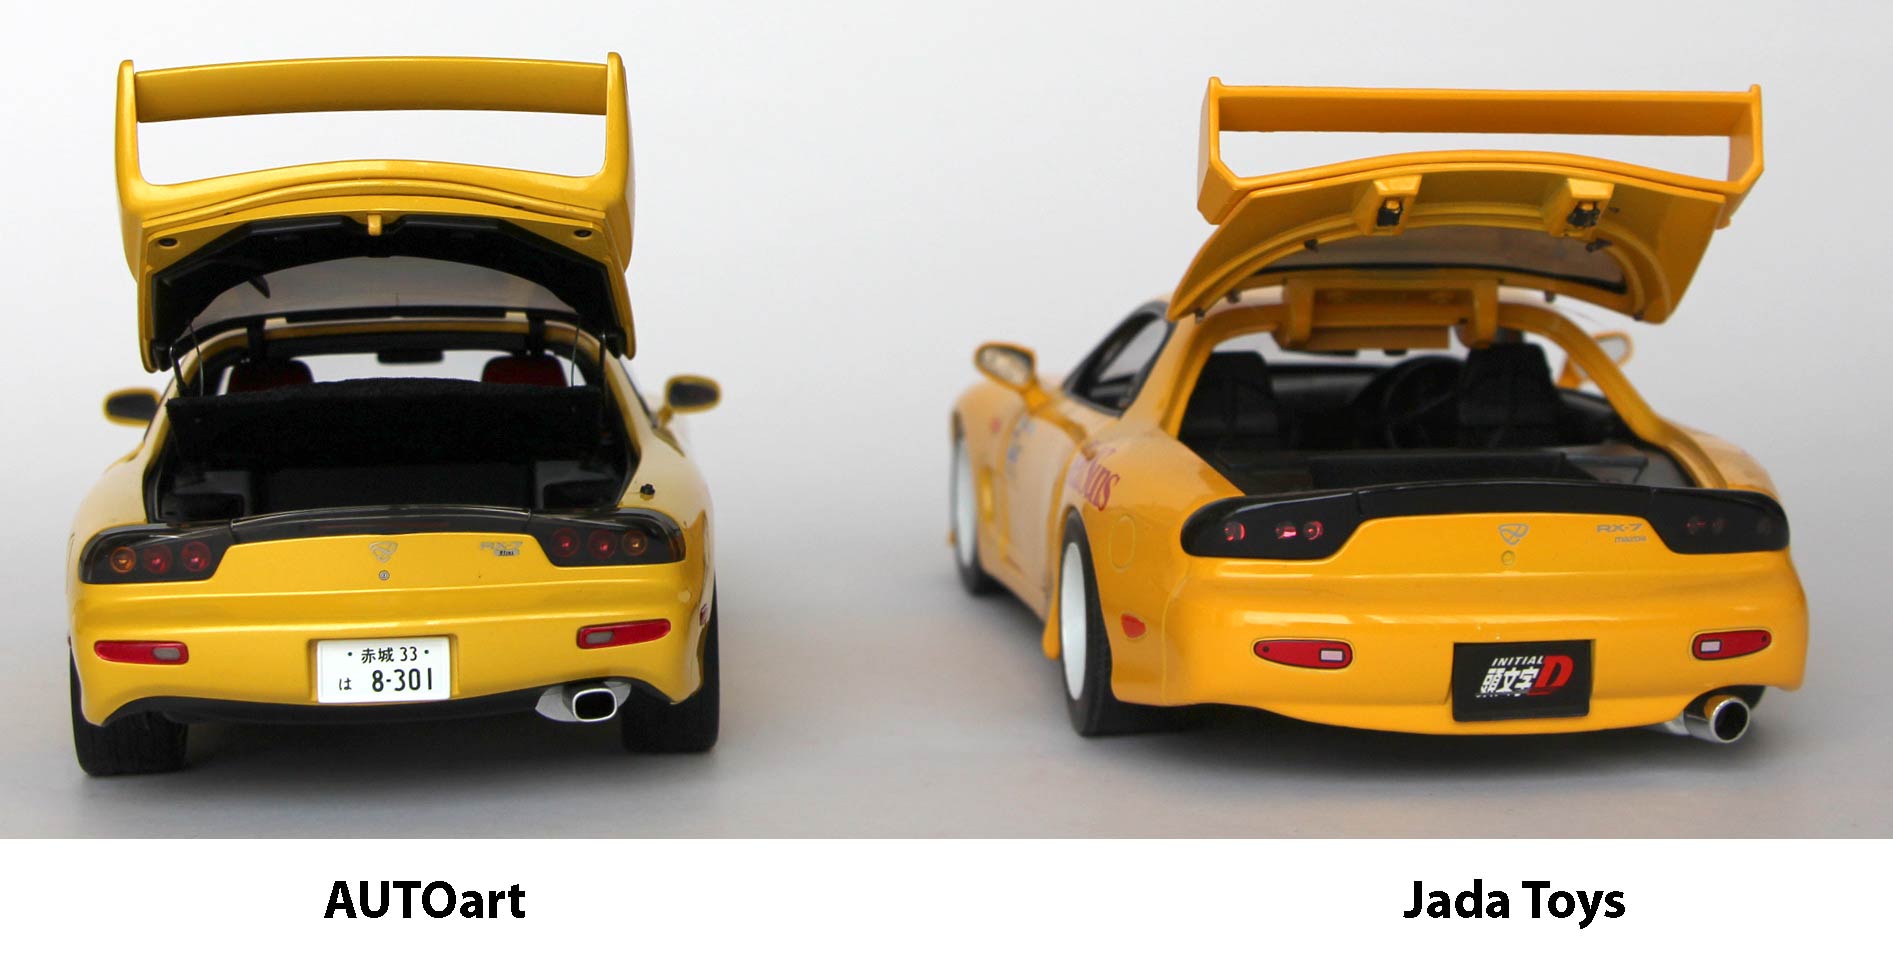 comparaison des haillons de la version AUTOart et Jada Toys de la RX-7 d'Initial D